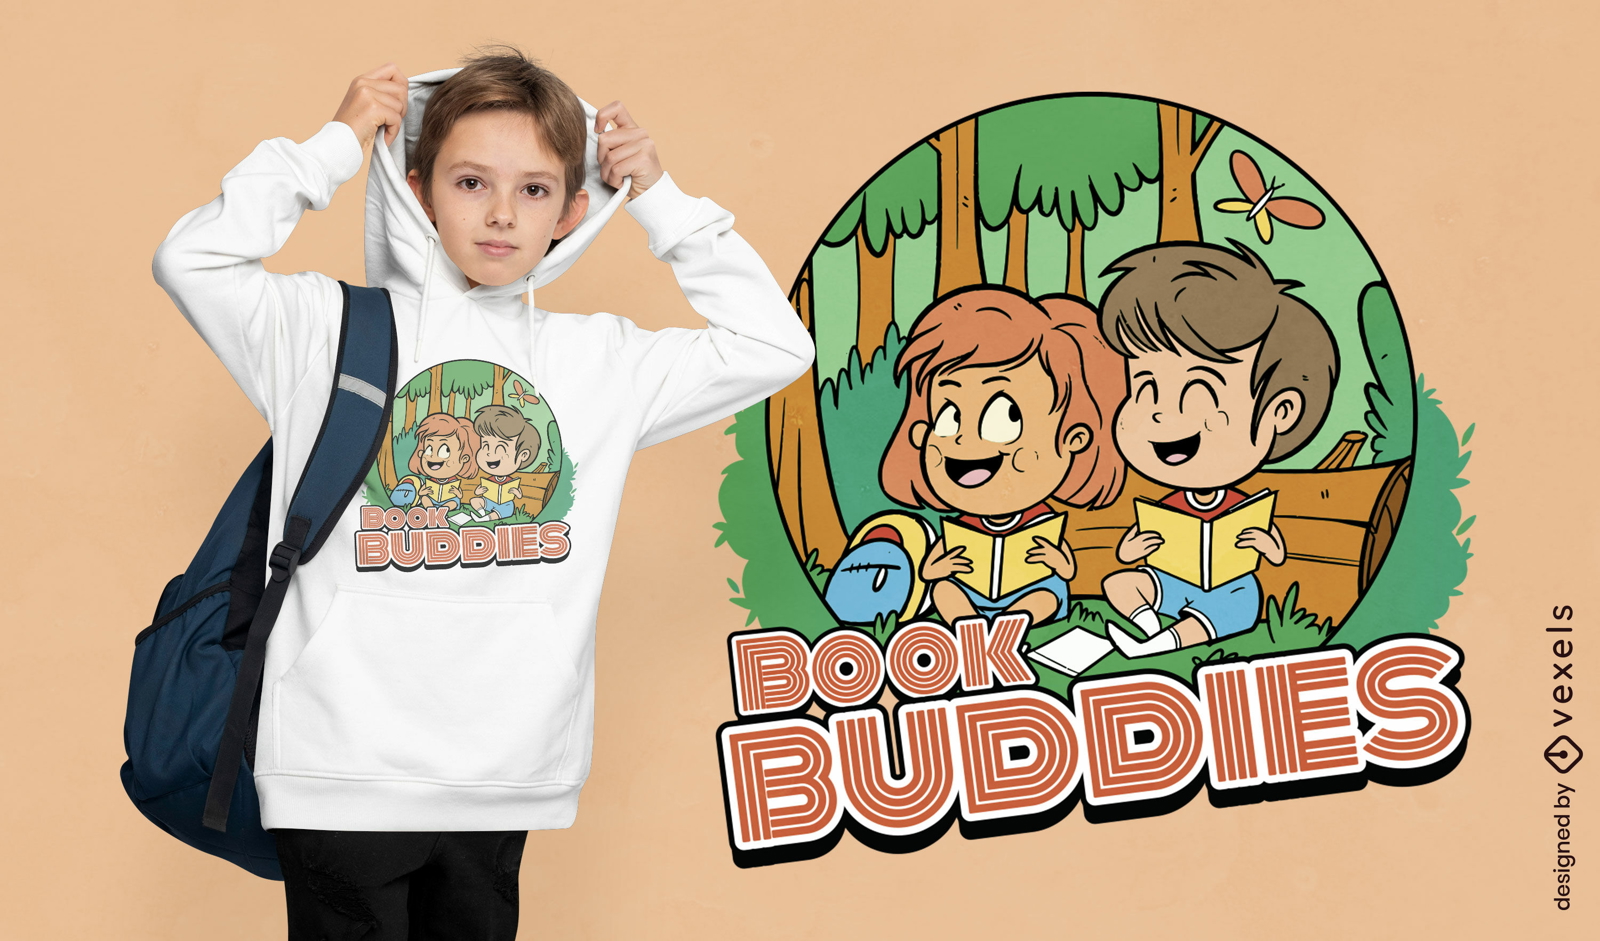 Book buddies kids t-shirt design